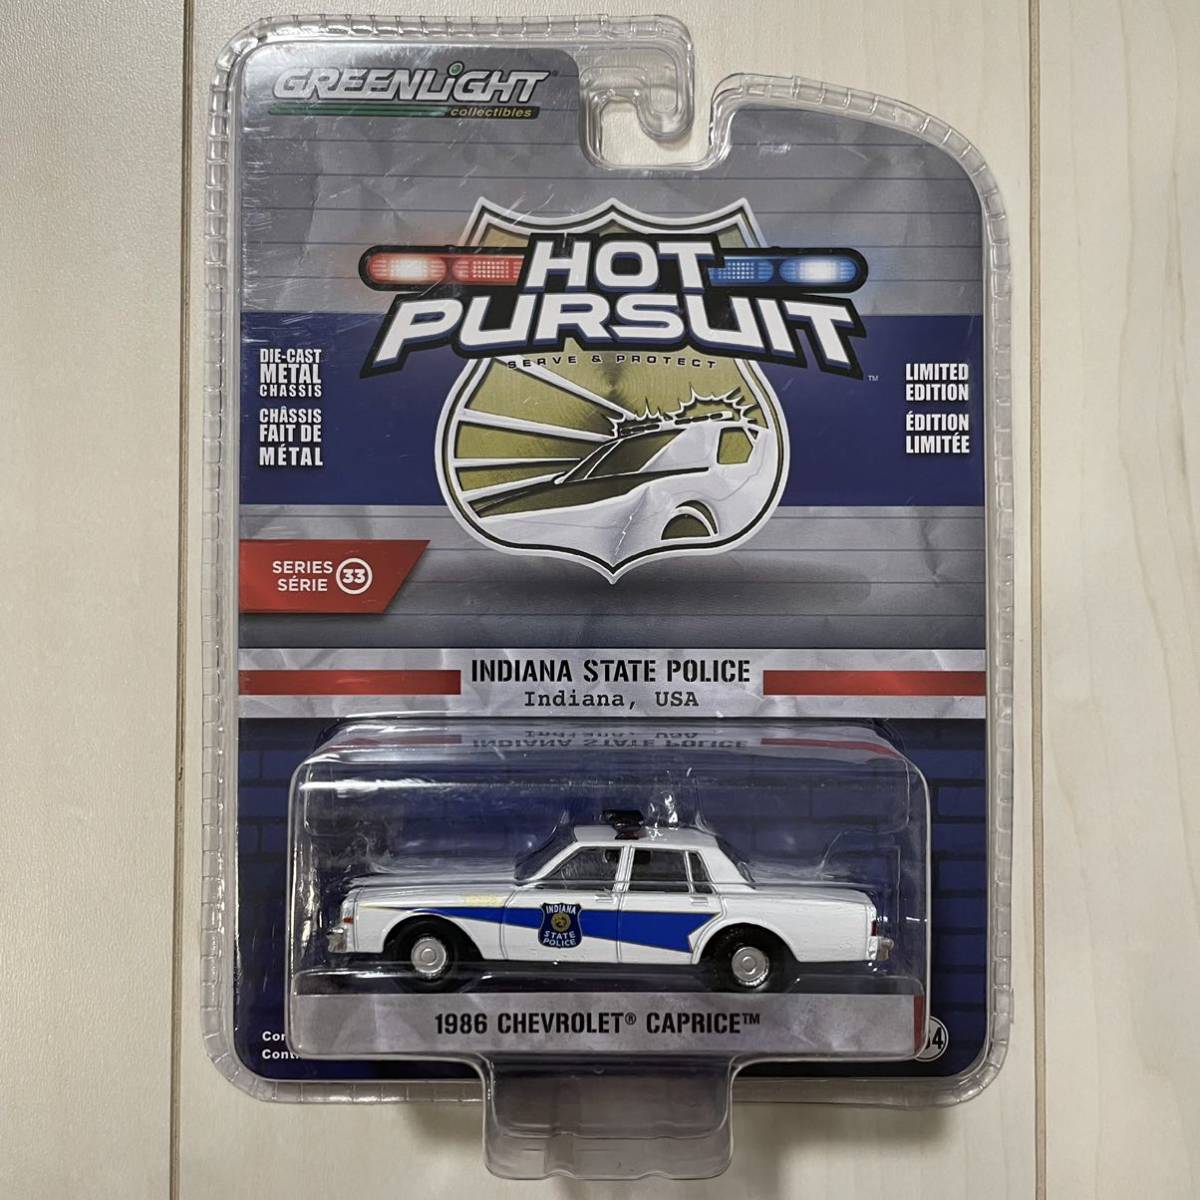 ★グリーンライト★ 1986 Chevrolet Caprice Hot Pursuit Police Greenlight シボレー カプリス アメ車 ホットパシュート ホットウィール_画像1